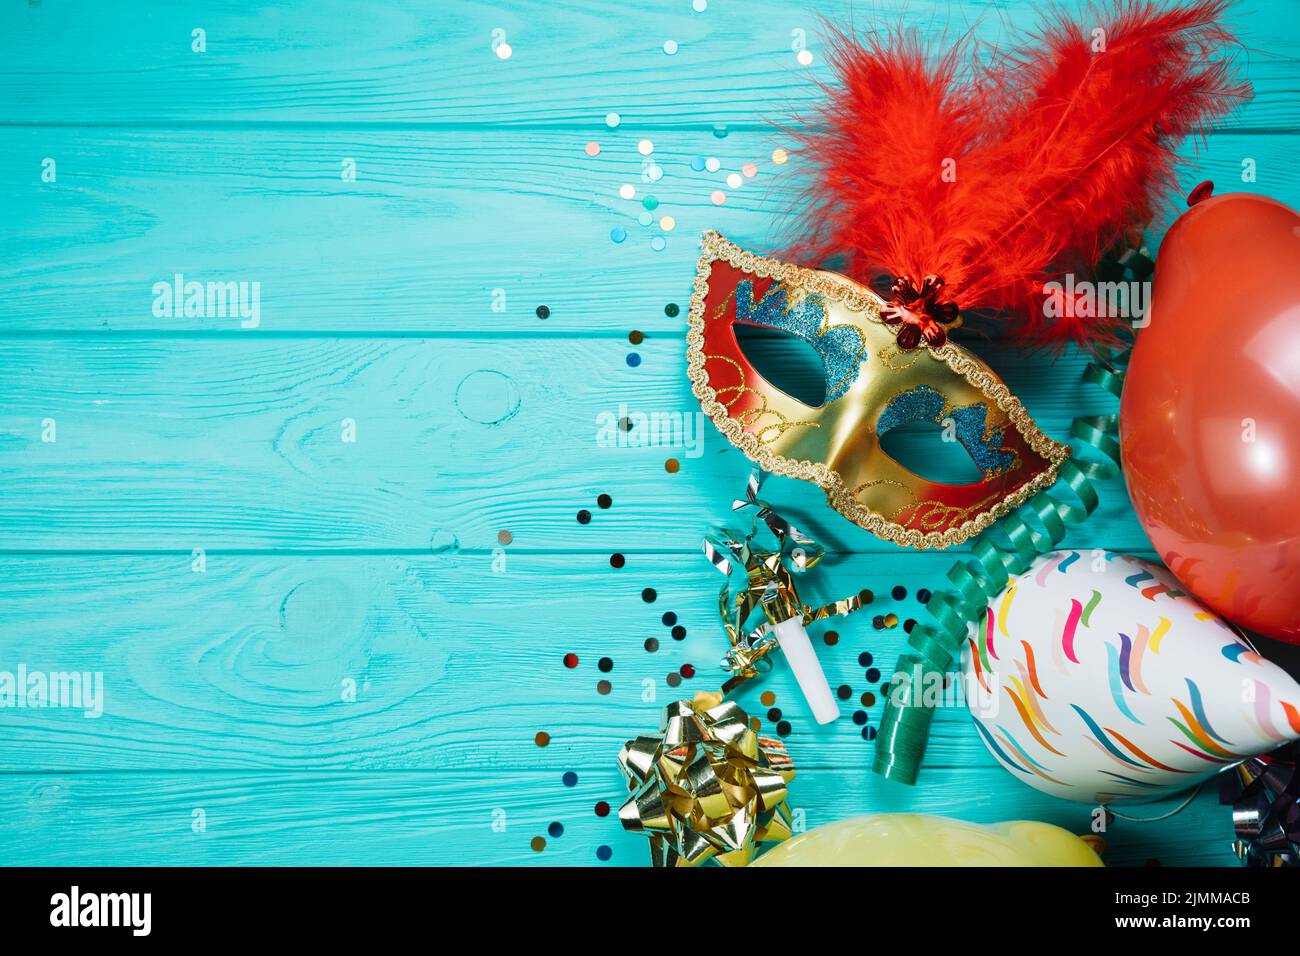 Fête chapeau ballon avec confetti mascarade doré masque de carnaval table en bois Banque D'Images